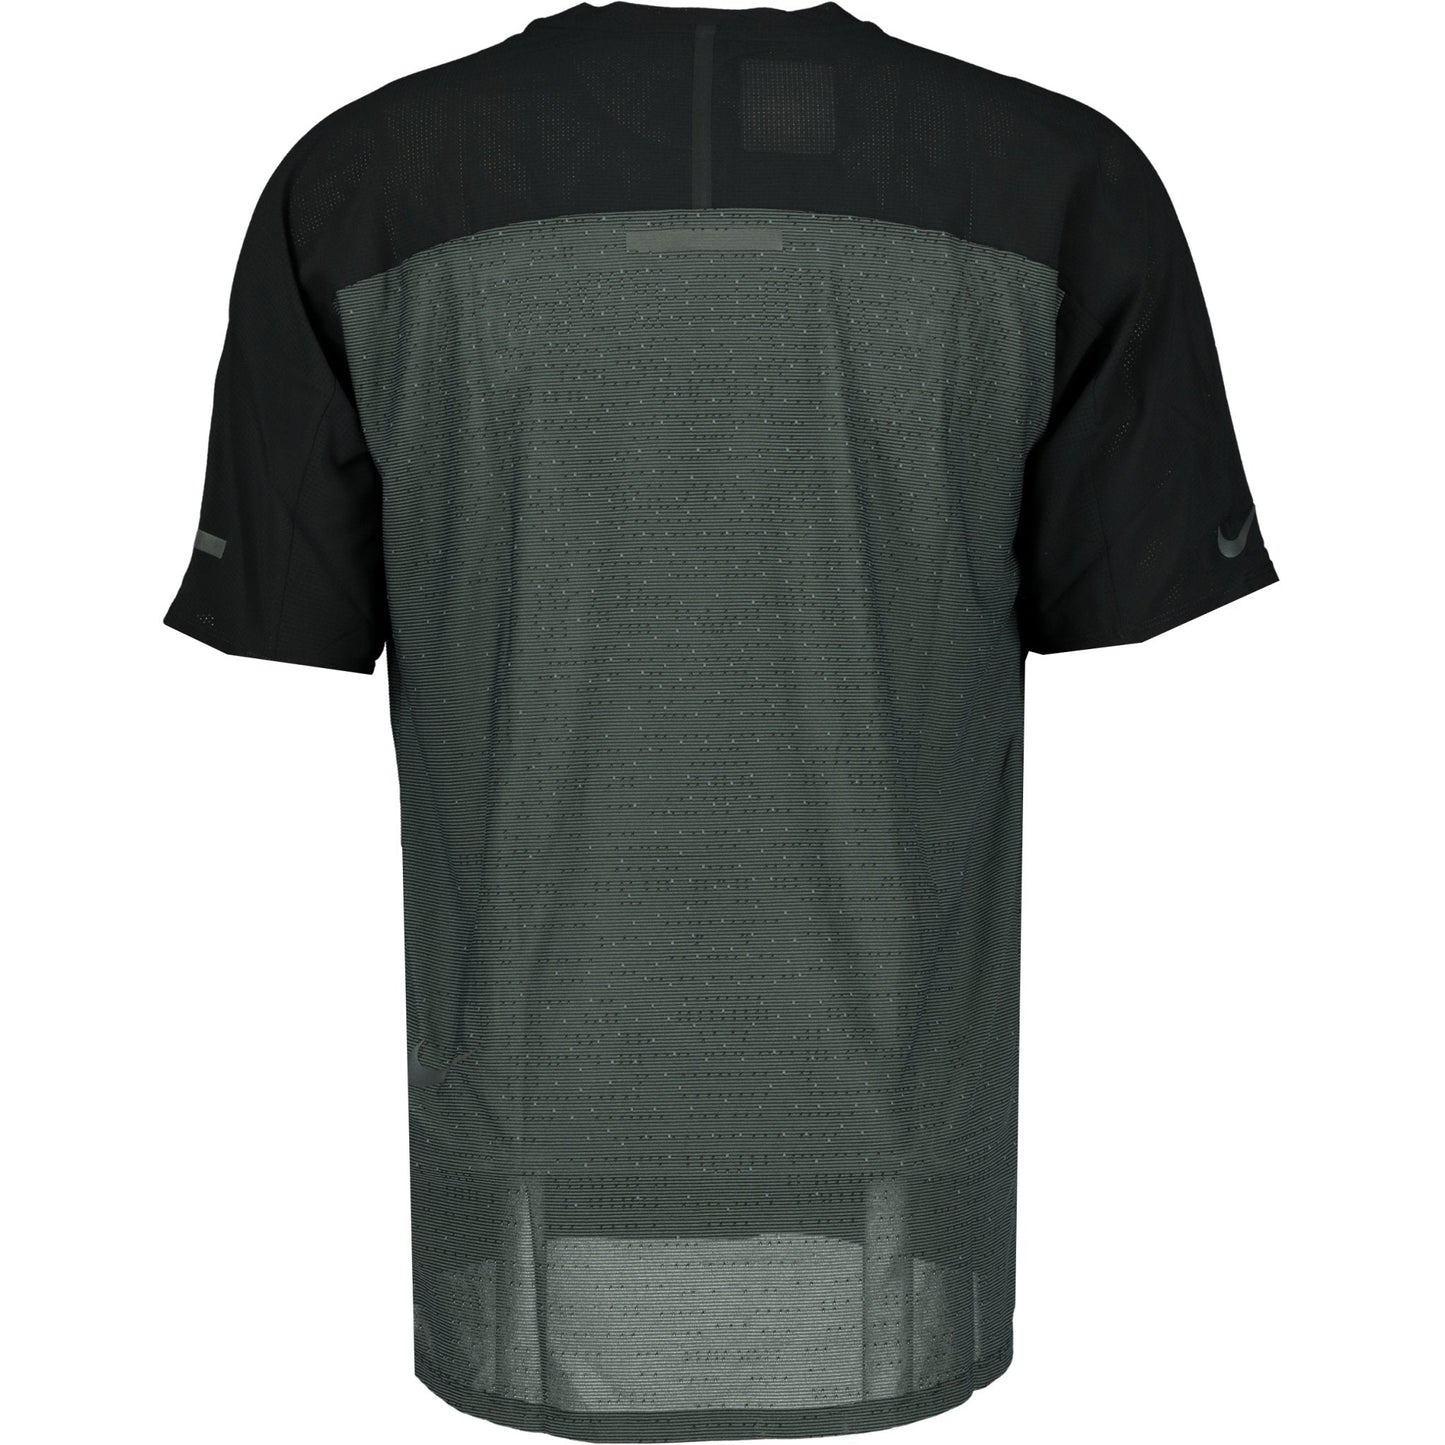 Nike Dri-Fit Tech Pack T-Shirt Grey & Black - LinkFashionco